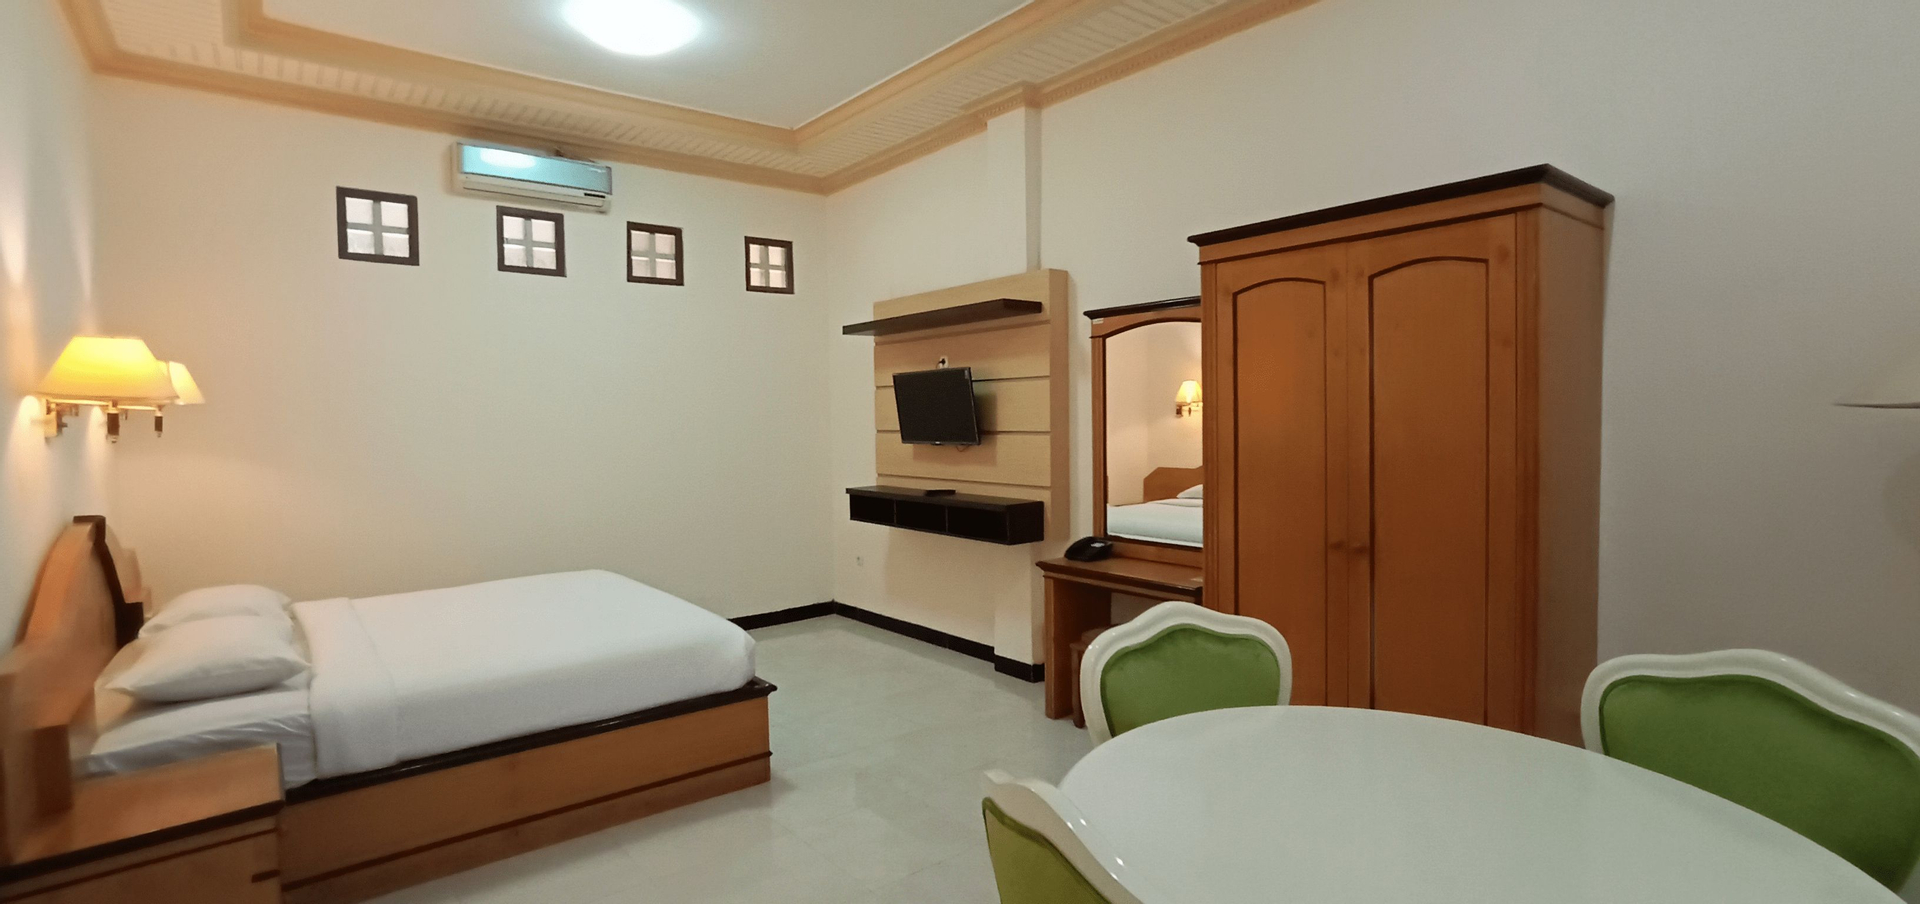 Bedroom 1, Bromo View Hotel & Restaurant, Probolinggo